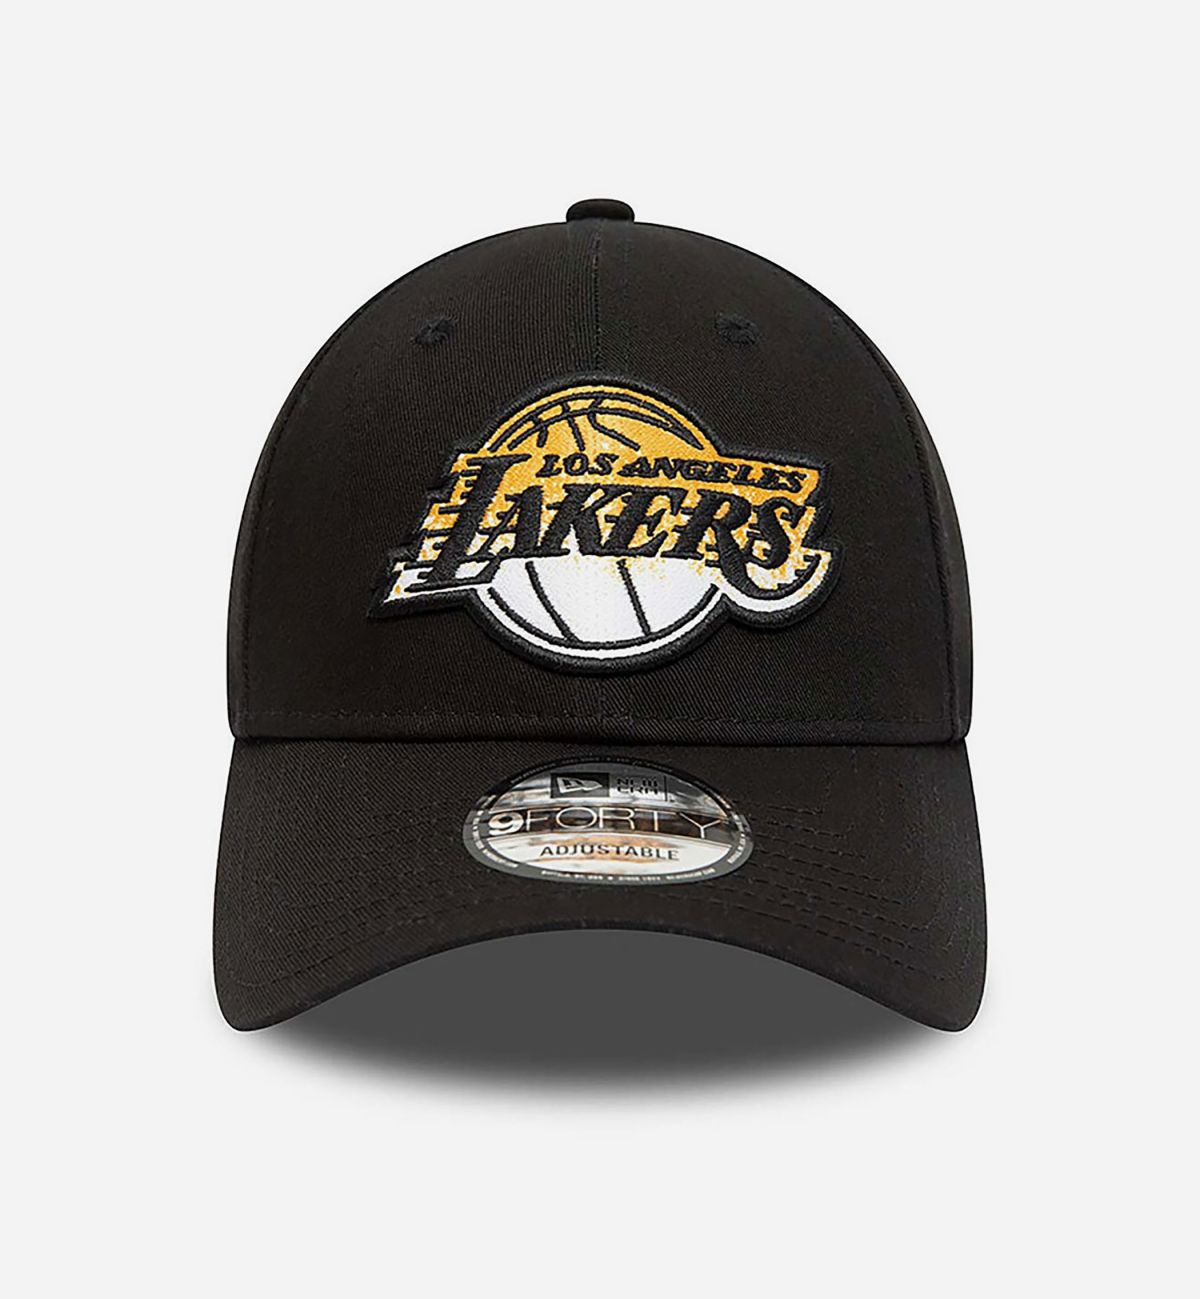  כובע מצחייה עם רקמת לוגו Lakers / גברים של NEW ERA